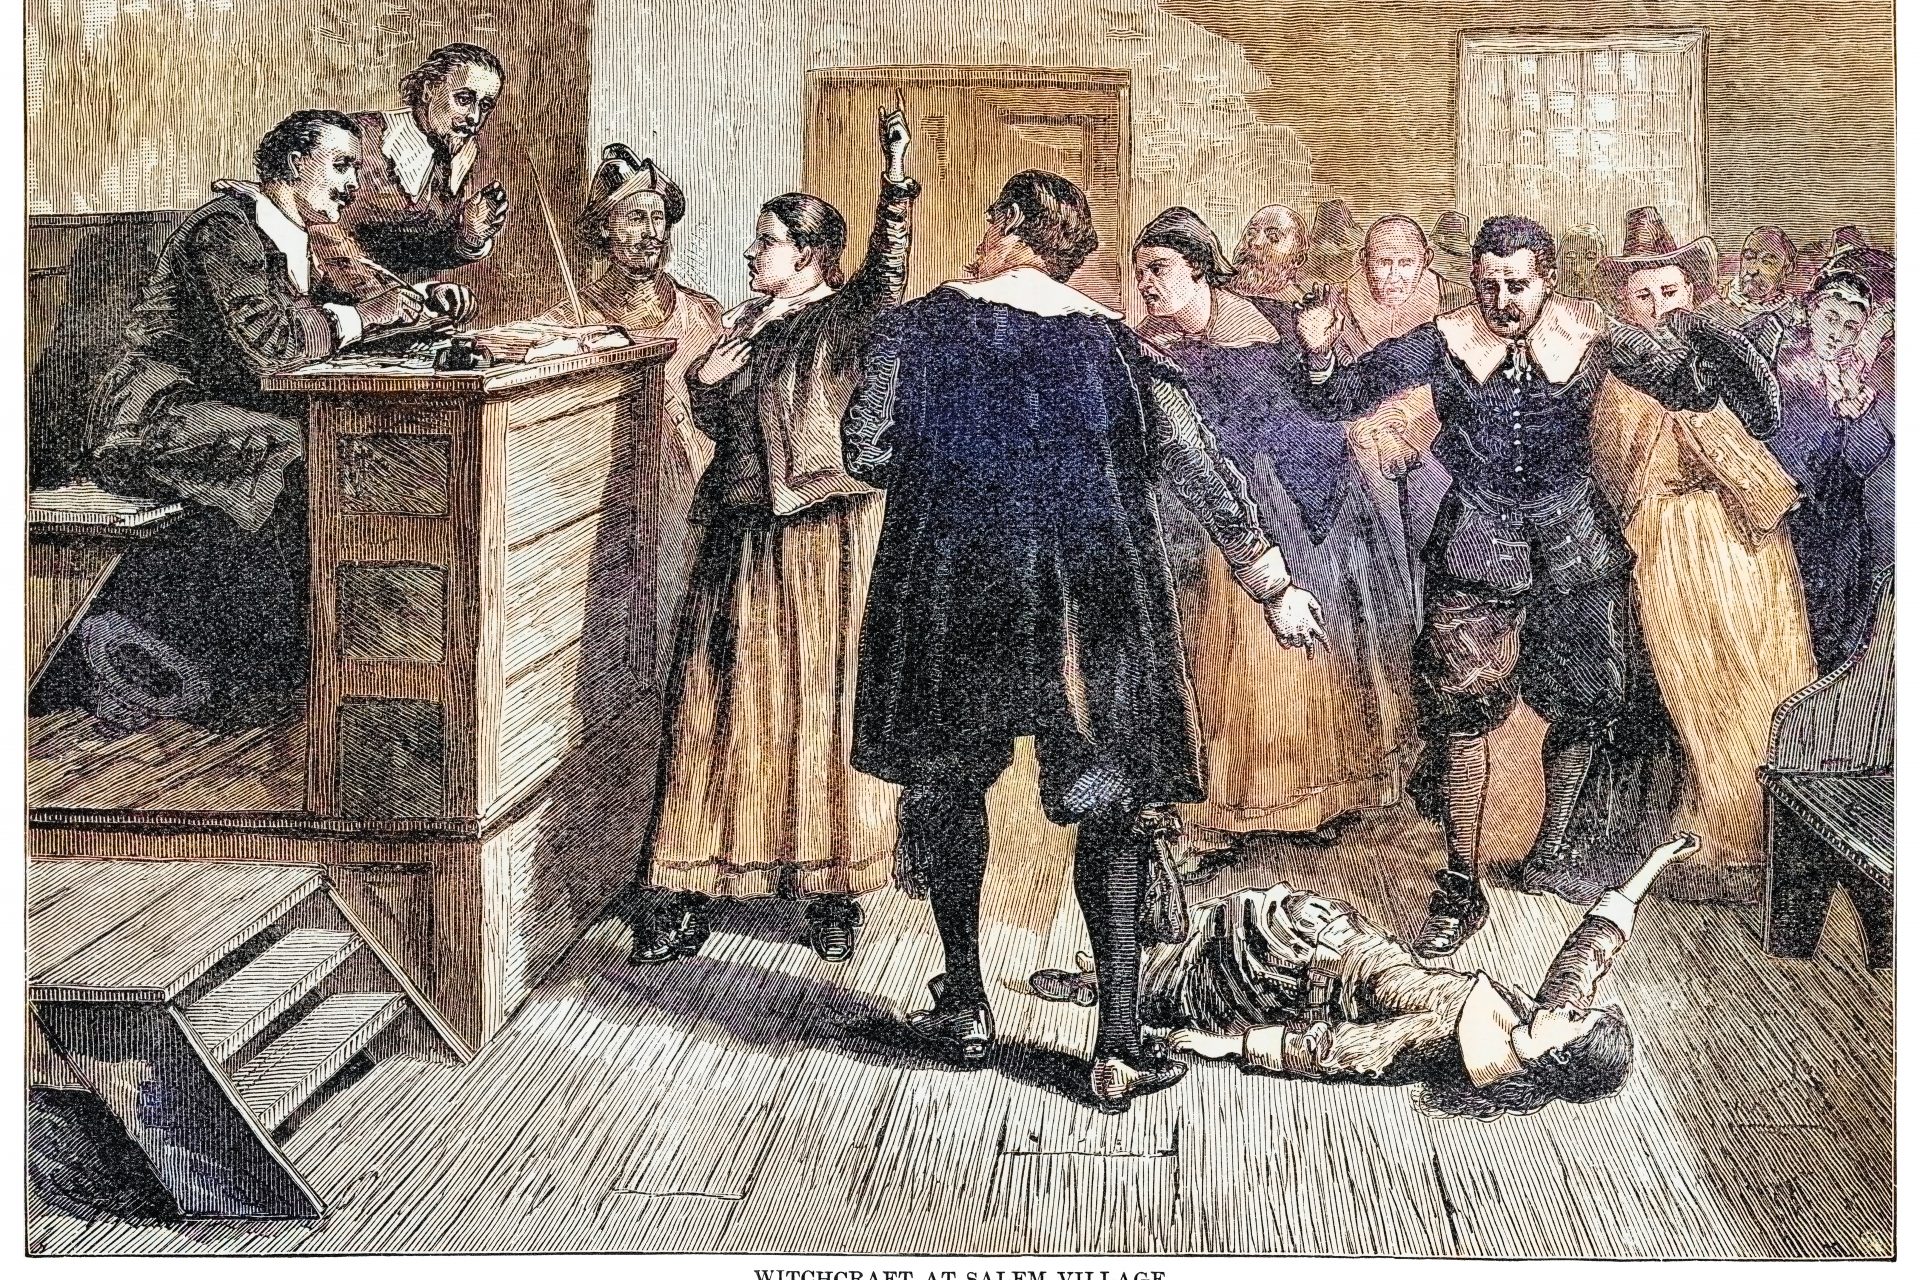 Salem witch trials begin